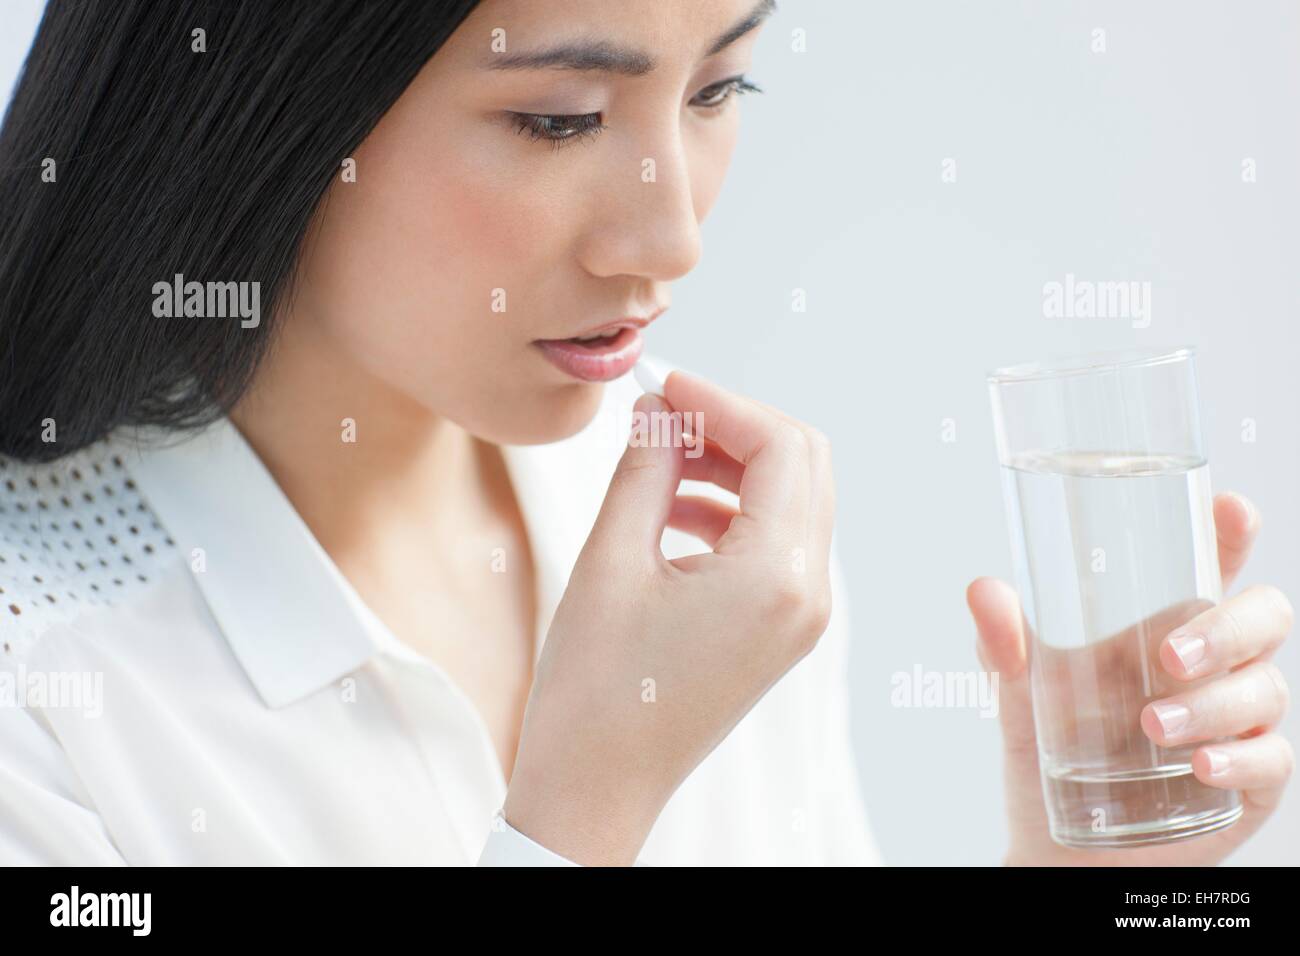 Woman taking painkiller Stock Photo